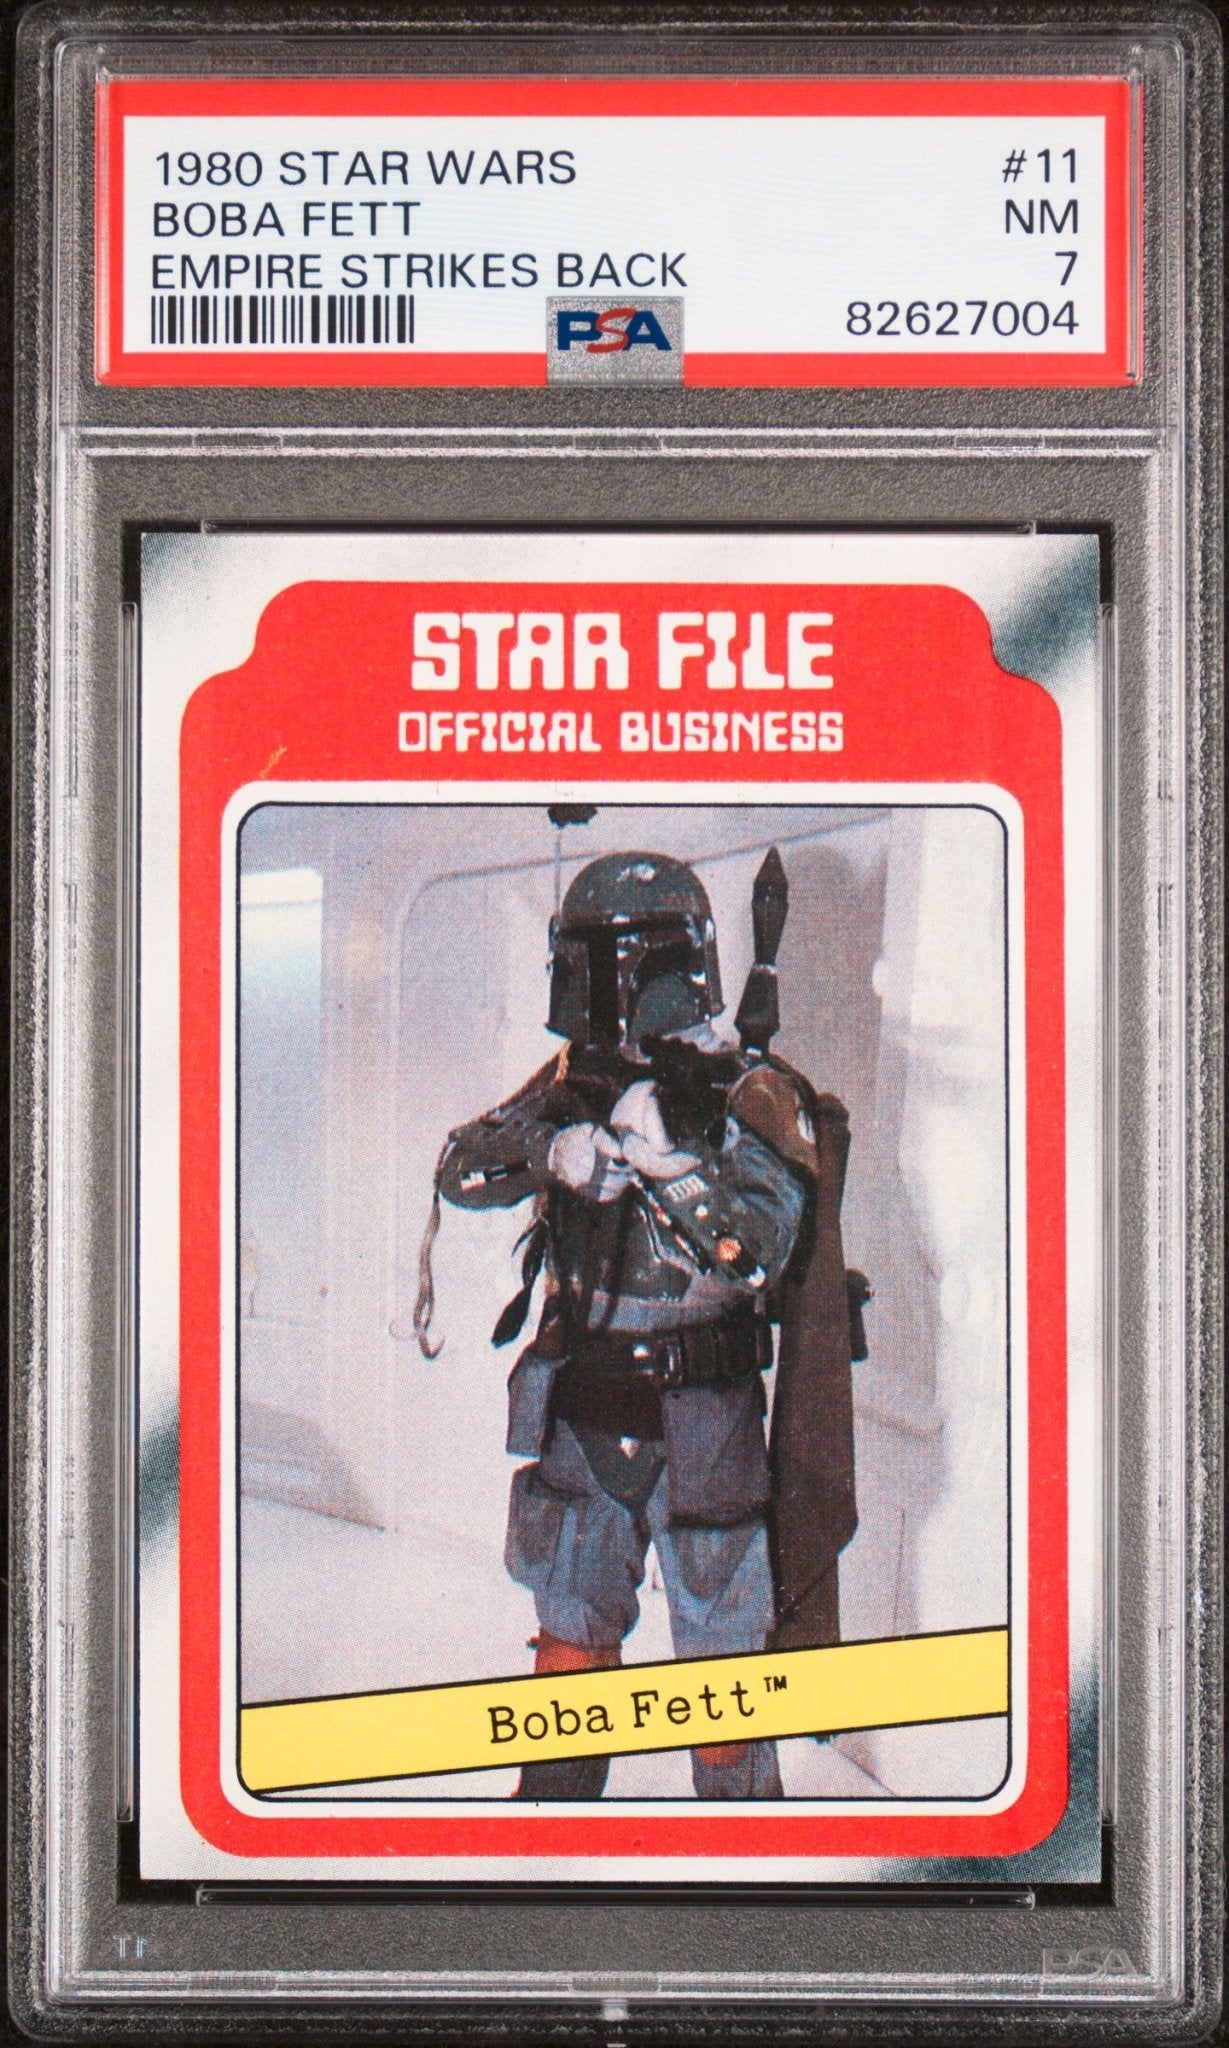 BOBA FETT PSA 7 1980 Star Wars Empire Strikes Back Star File #11 Star Wars Base Graded Cards - Hobby Gems